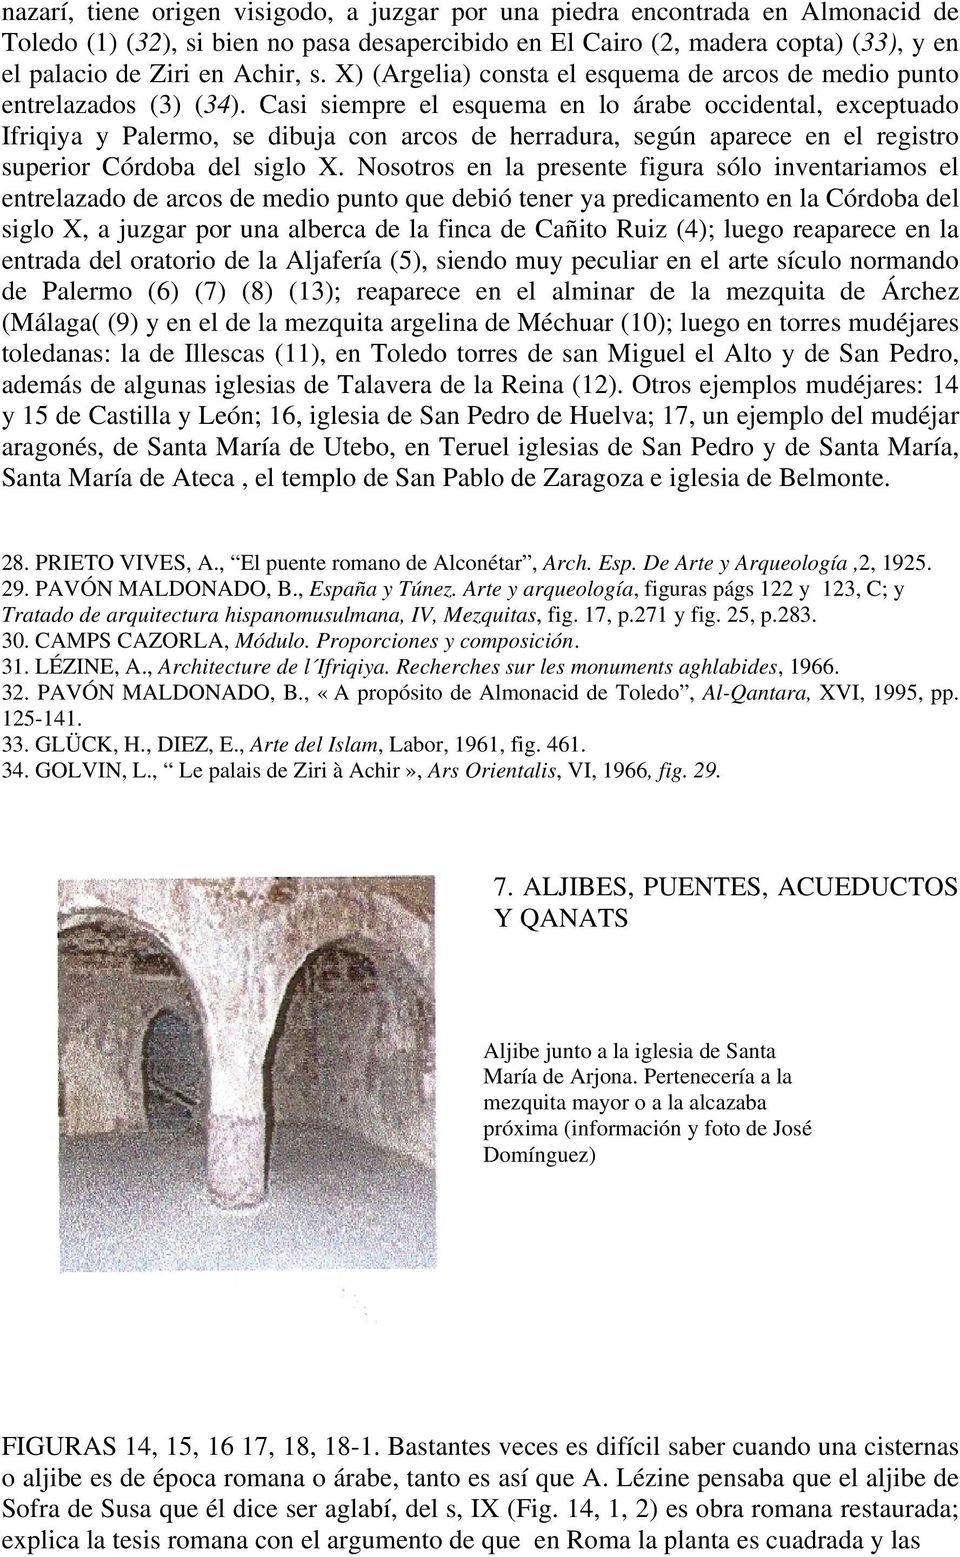 Casi siempre el esquema en lo árabe occidental, exceptuado Ifriqiya y Palermo, se dibuja con arcos de herradura, según aparece en el registro superior Córdoba del siglo X.